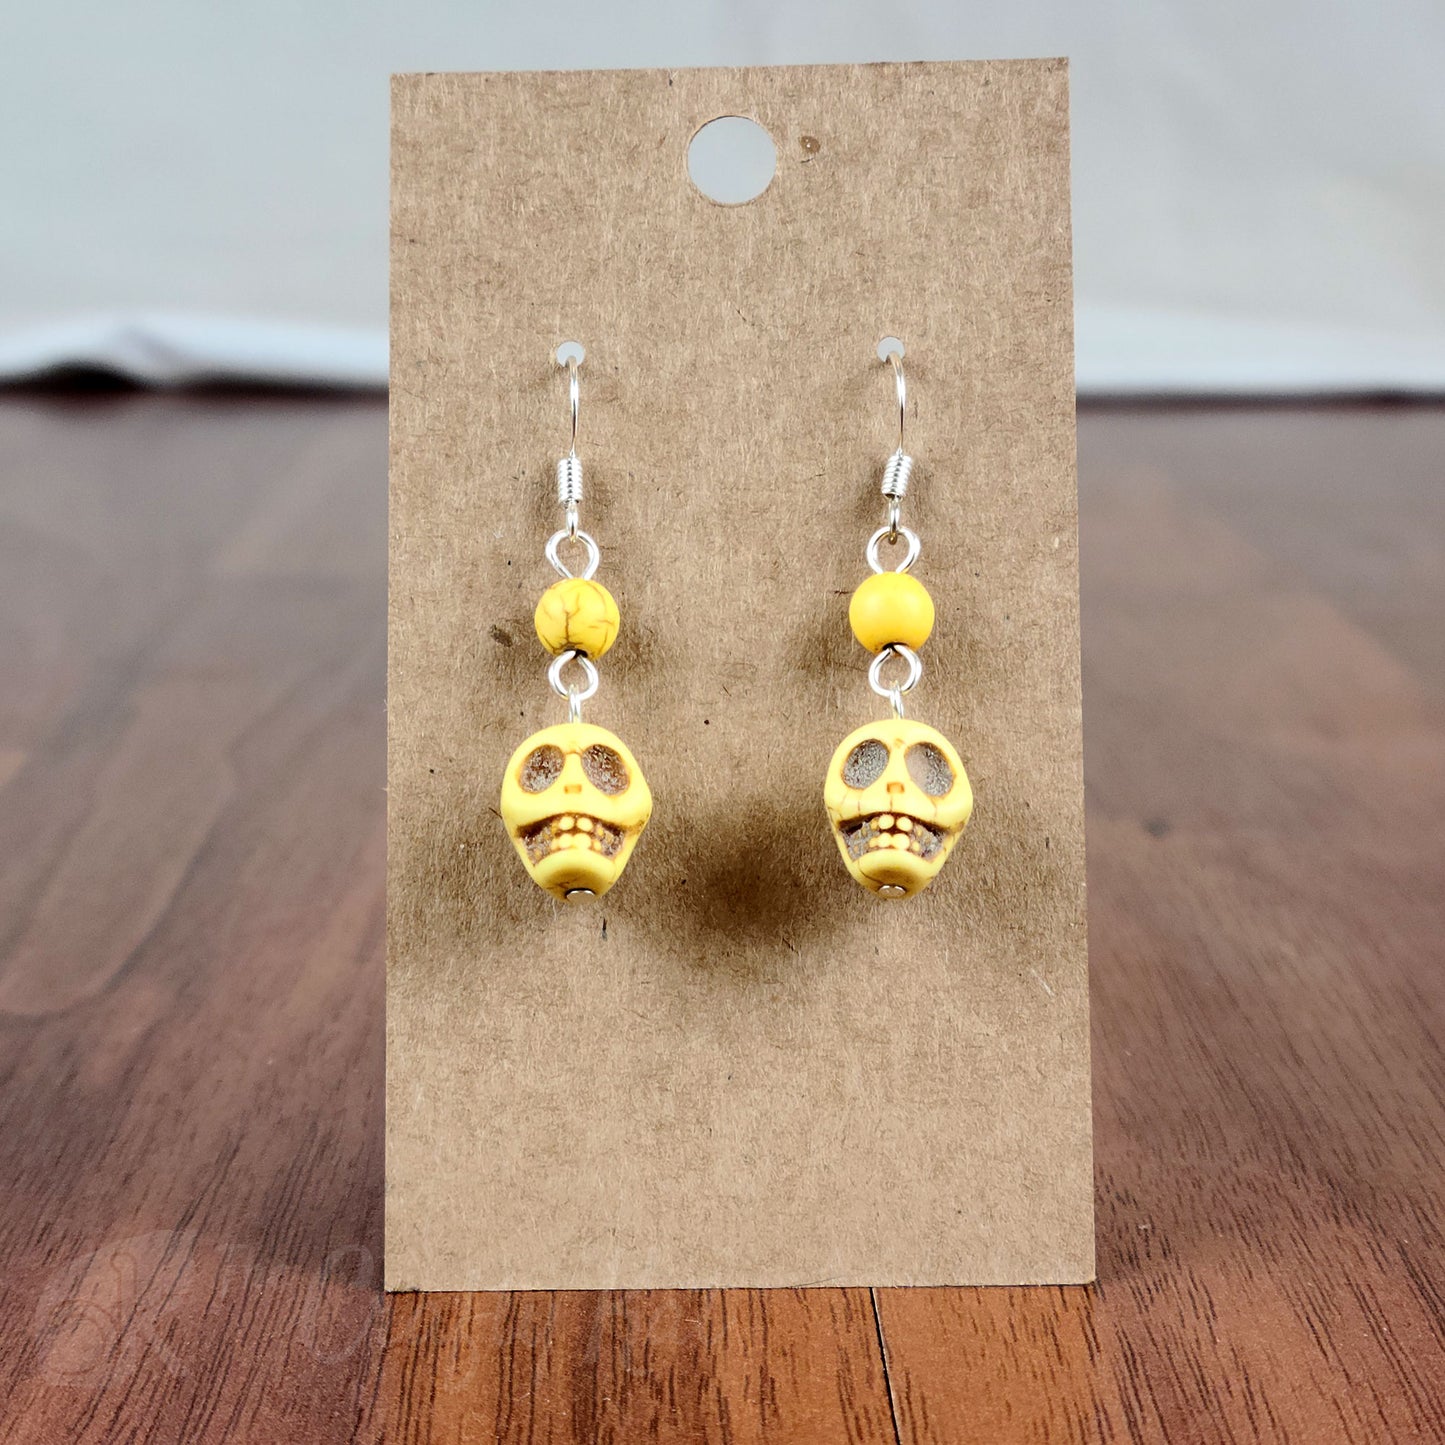 Boulder & Skully - Earrings